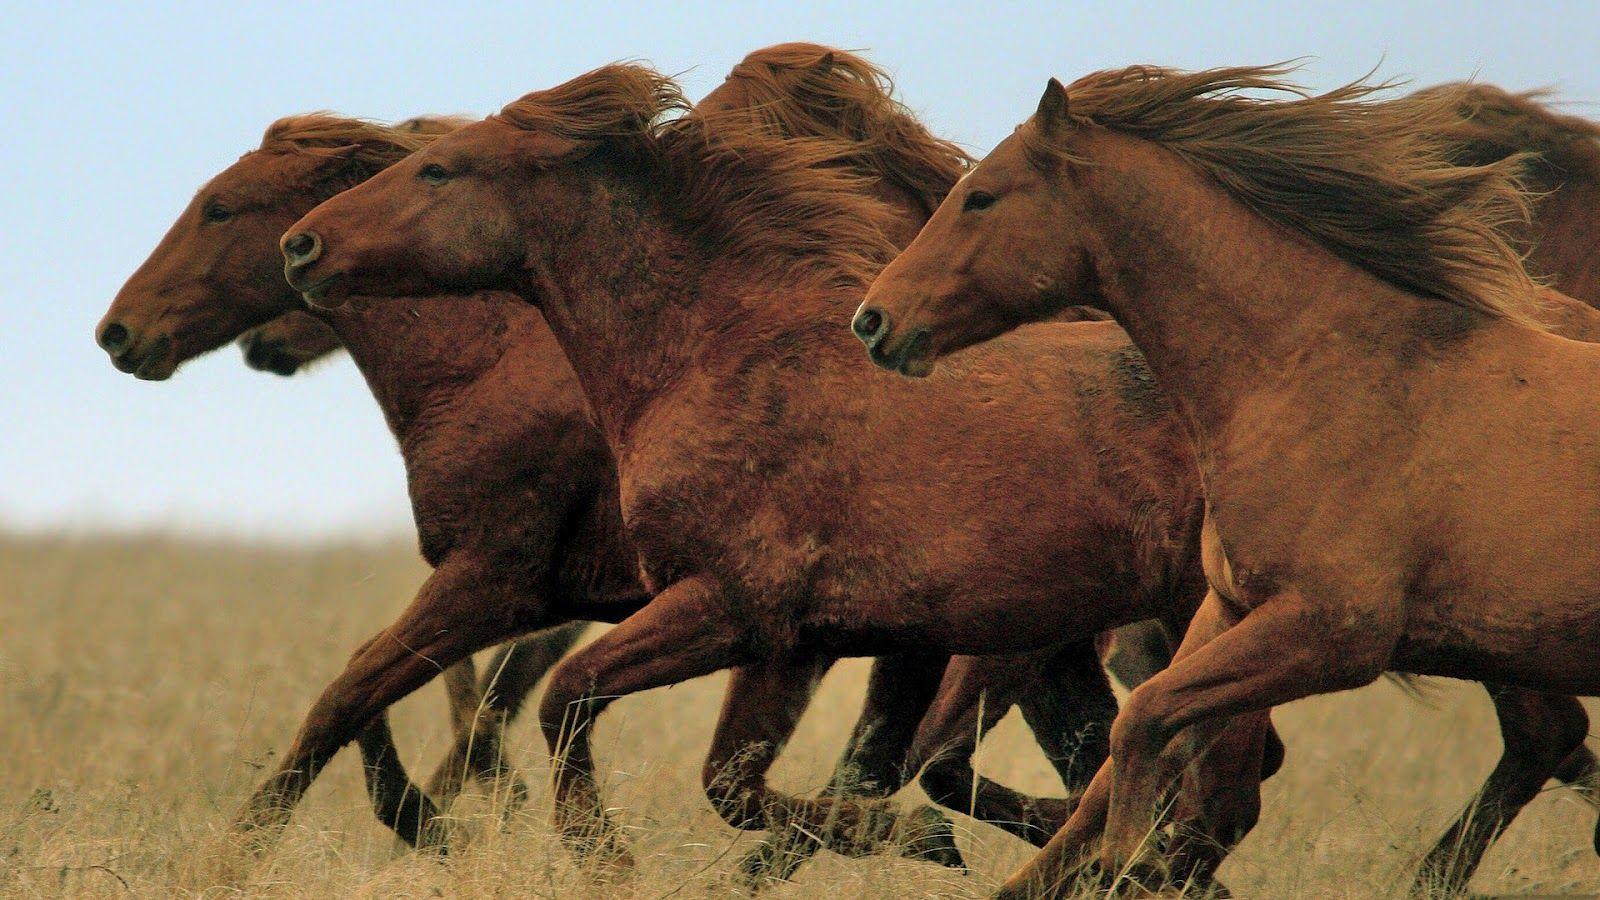 Running Horse Group Desktop Wallpaper 18947